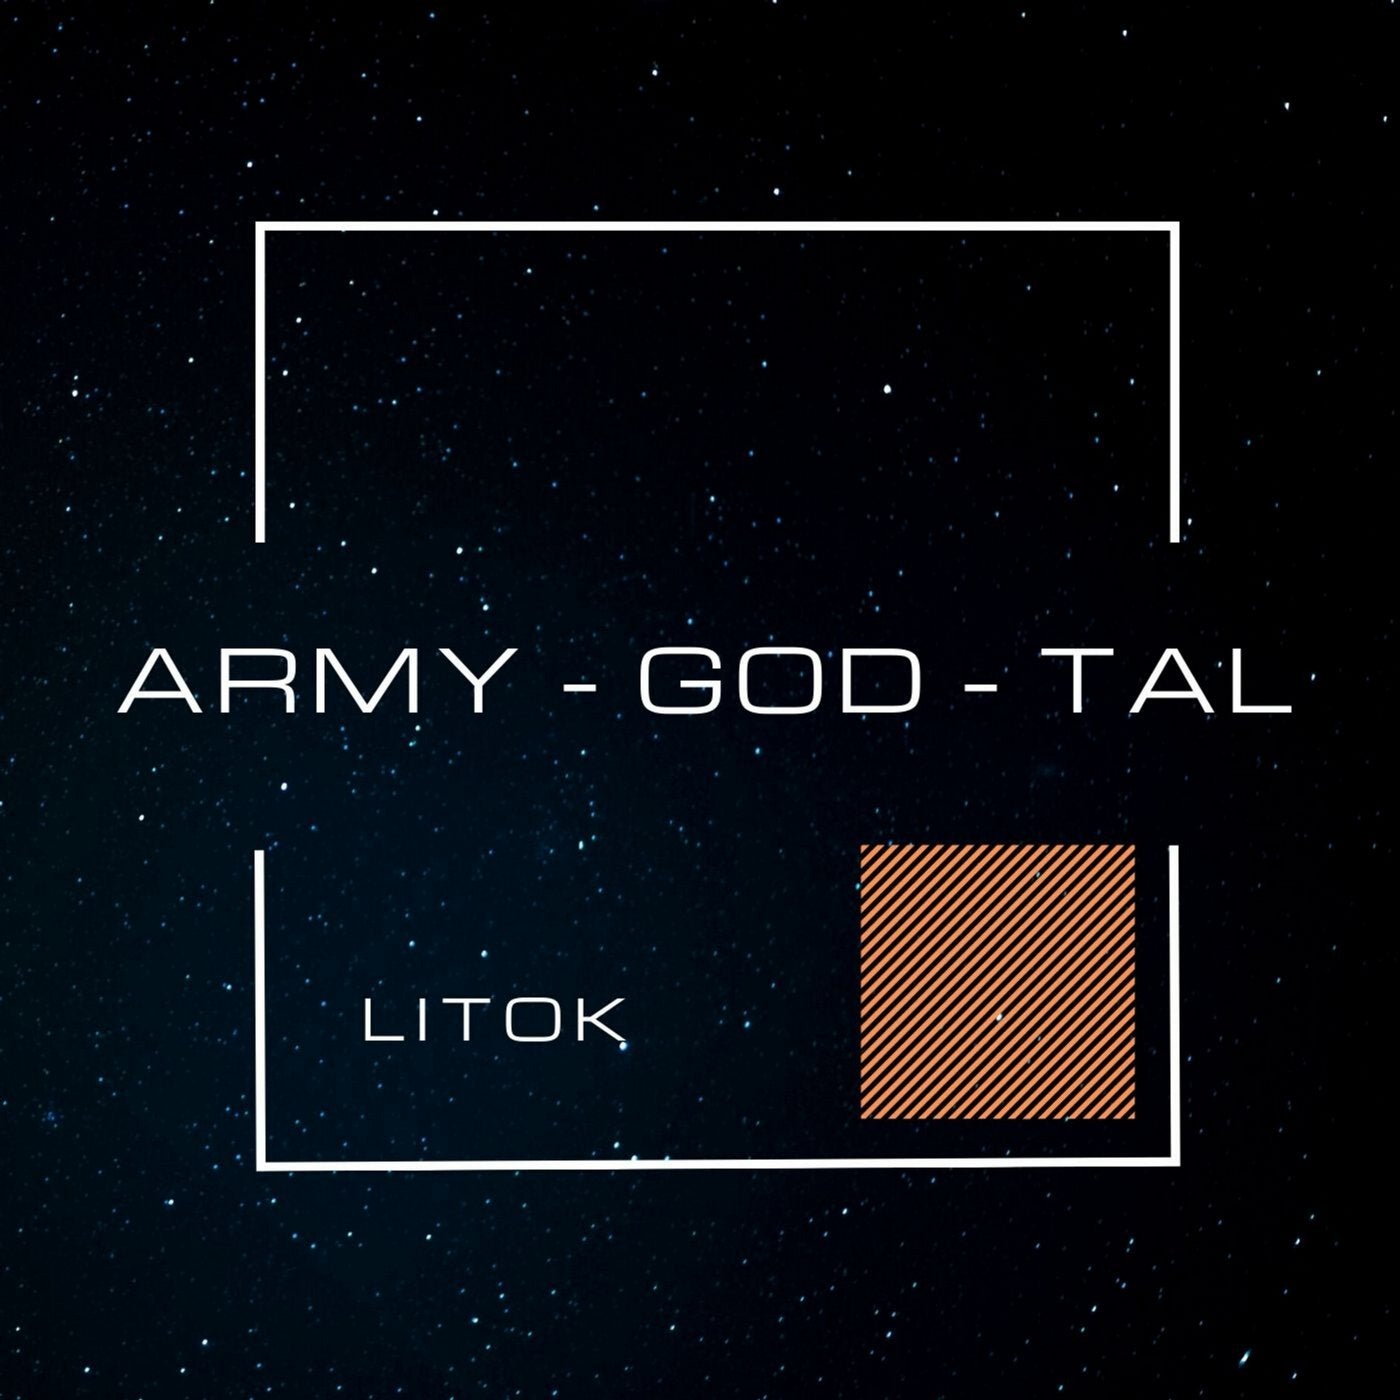 Army - God - Tal